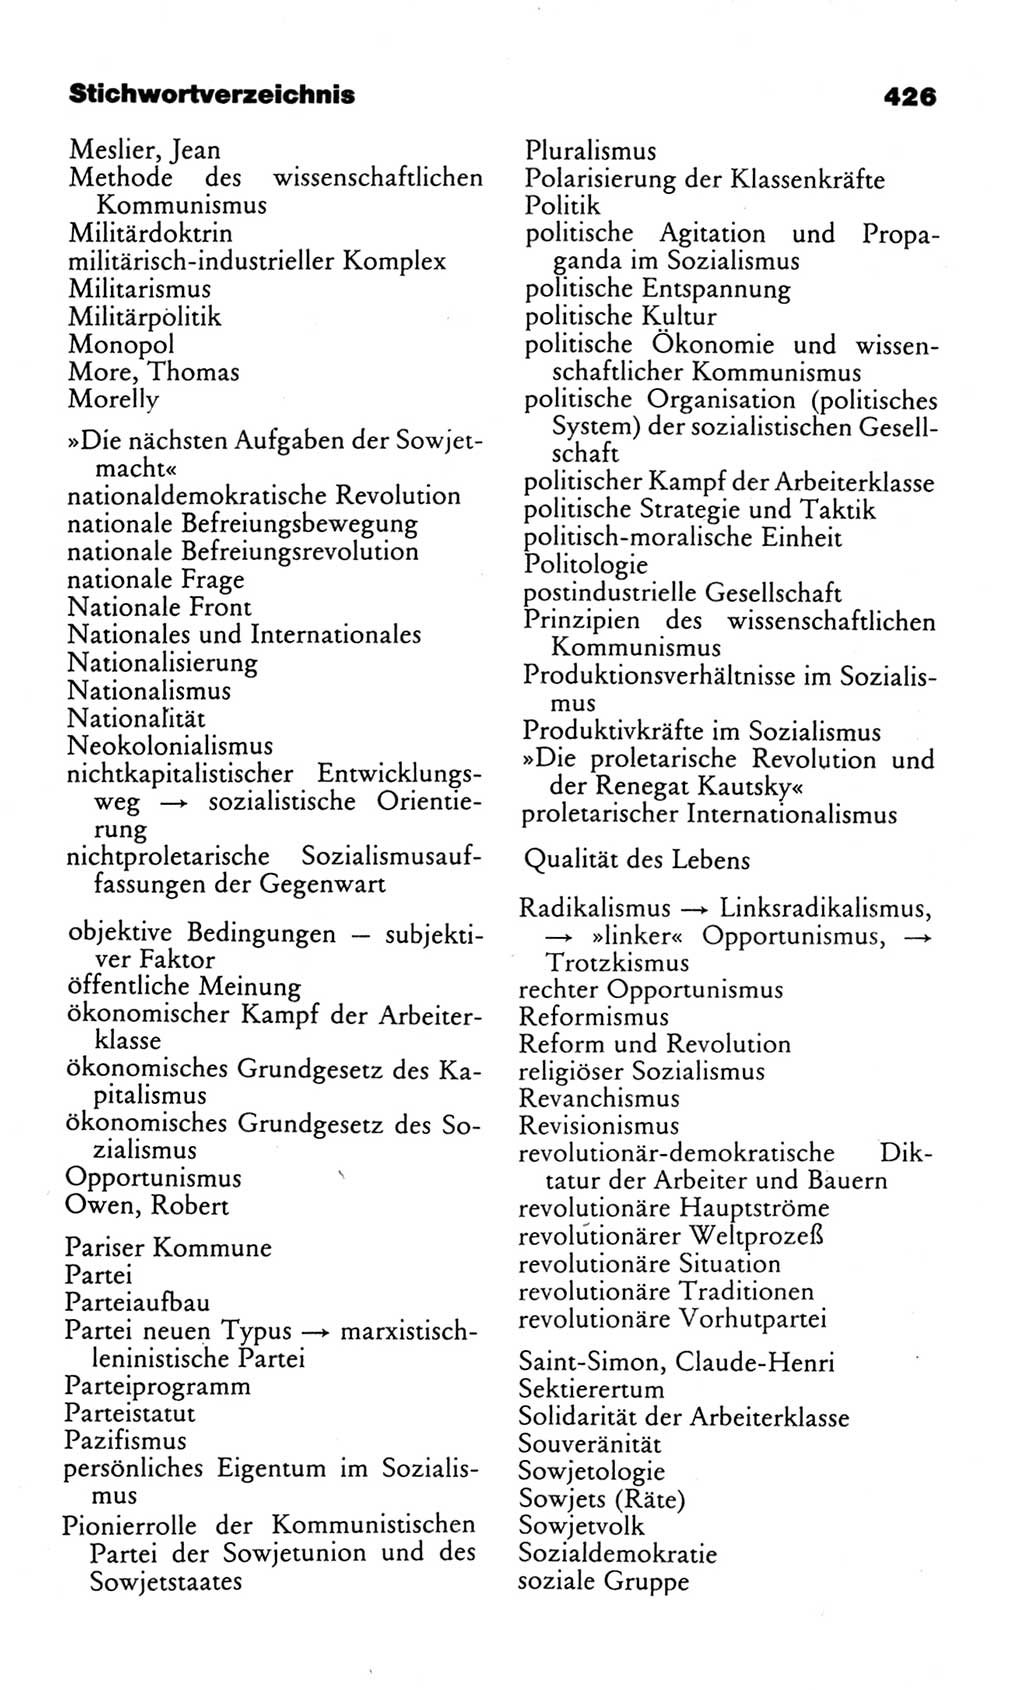 Wörterbuch des wissenschaftlichen Kommunismus [Deutsche Demokratische Republik (DDR)] 1982, Seite 426 (Wb. wiss. Komm. DDR 1982, S. 426)